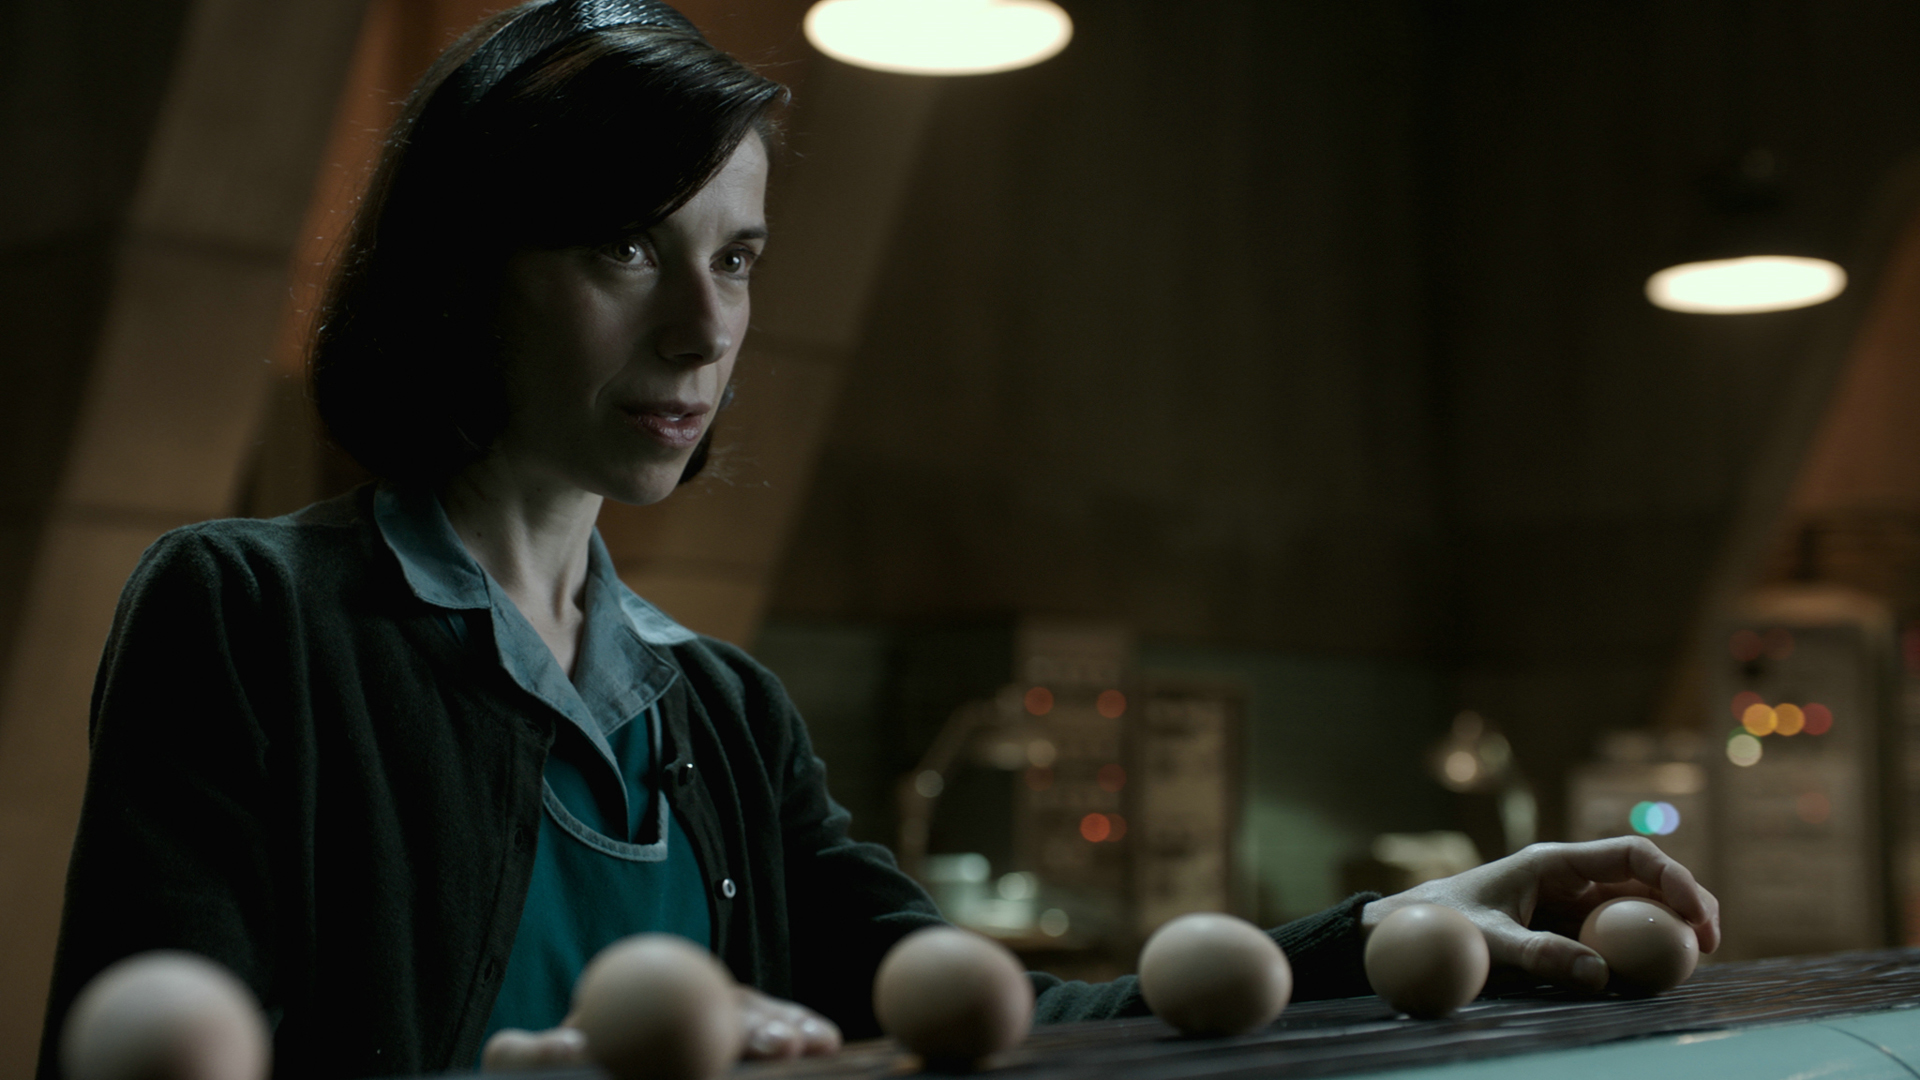 SHAPE OF WATER – DAS FLÜSTERN DES WASSERS: Elisa (Sally Hawkins) steht vor einem spärlich beleuchteten Hintergrund und hält ein Ei in der Hand.